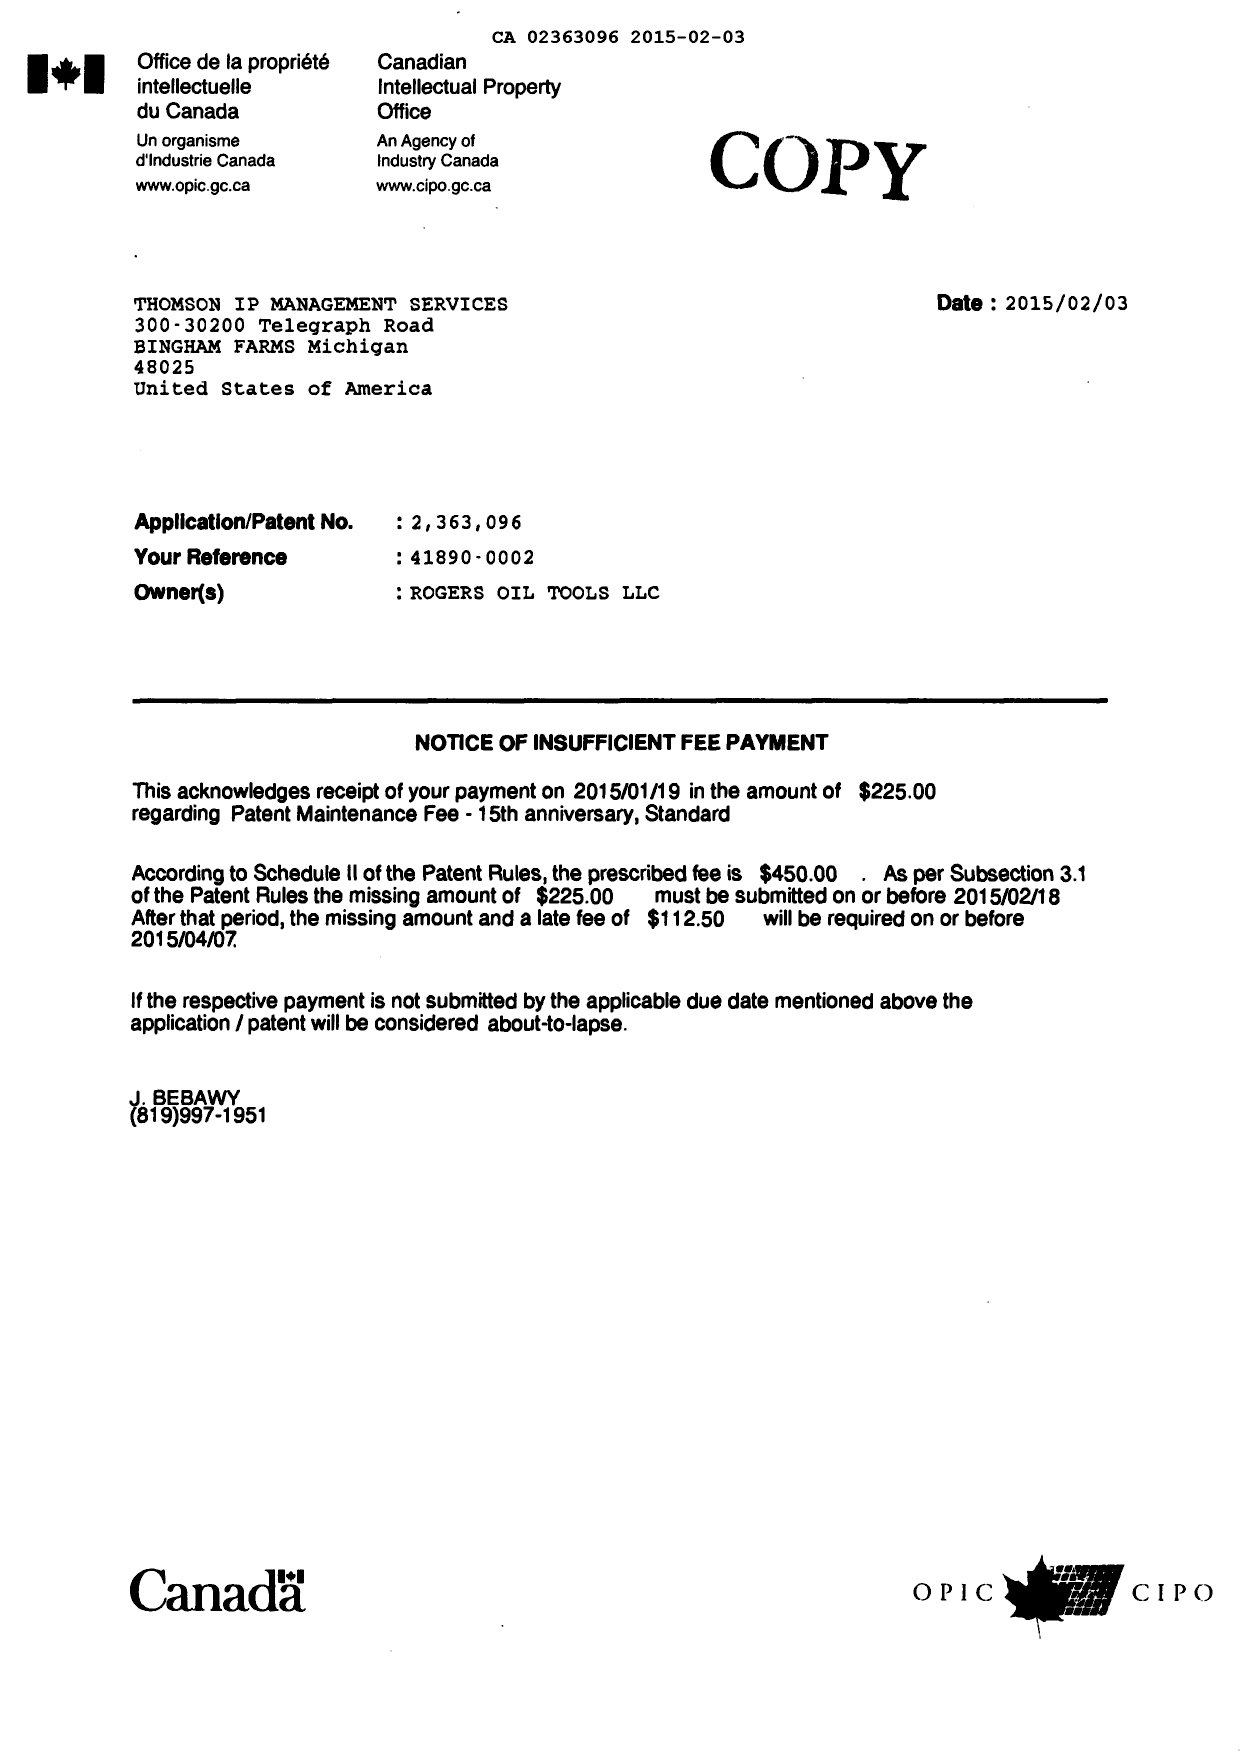 Document de brevet canadien 2363096. Correspondance 20150203. Image 1 de 1